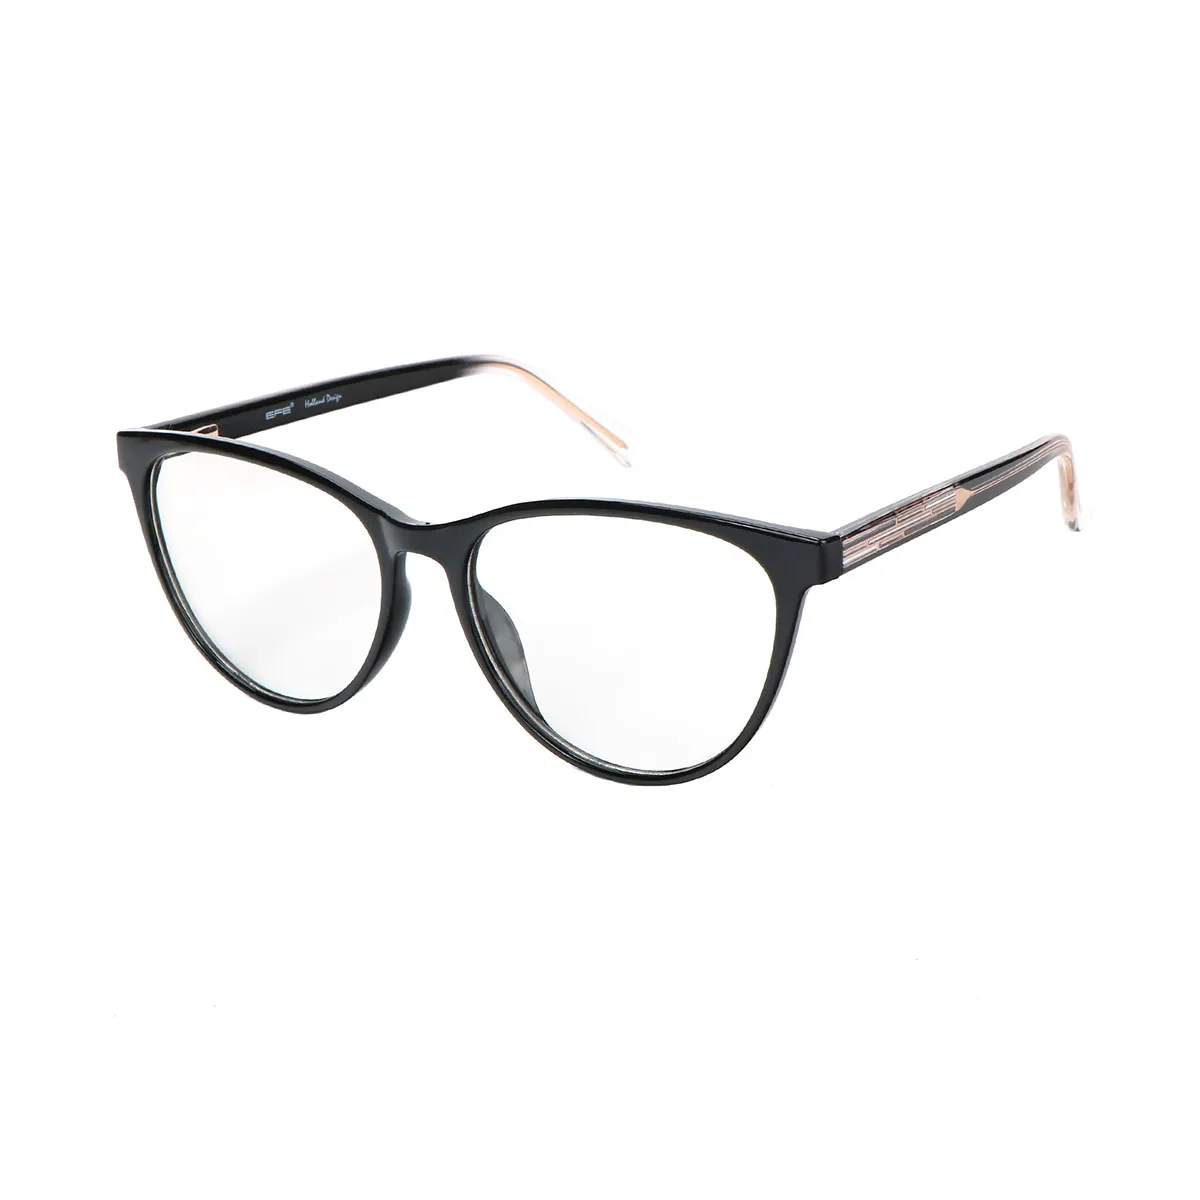 Elva - Cat-eye Black Glasses for Women